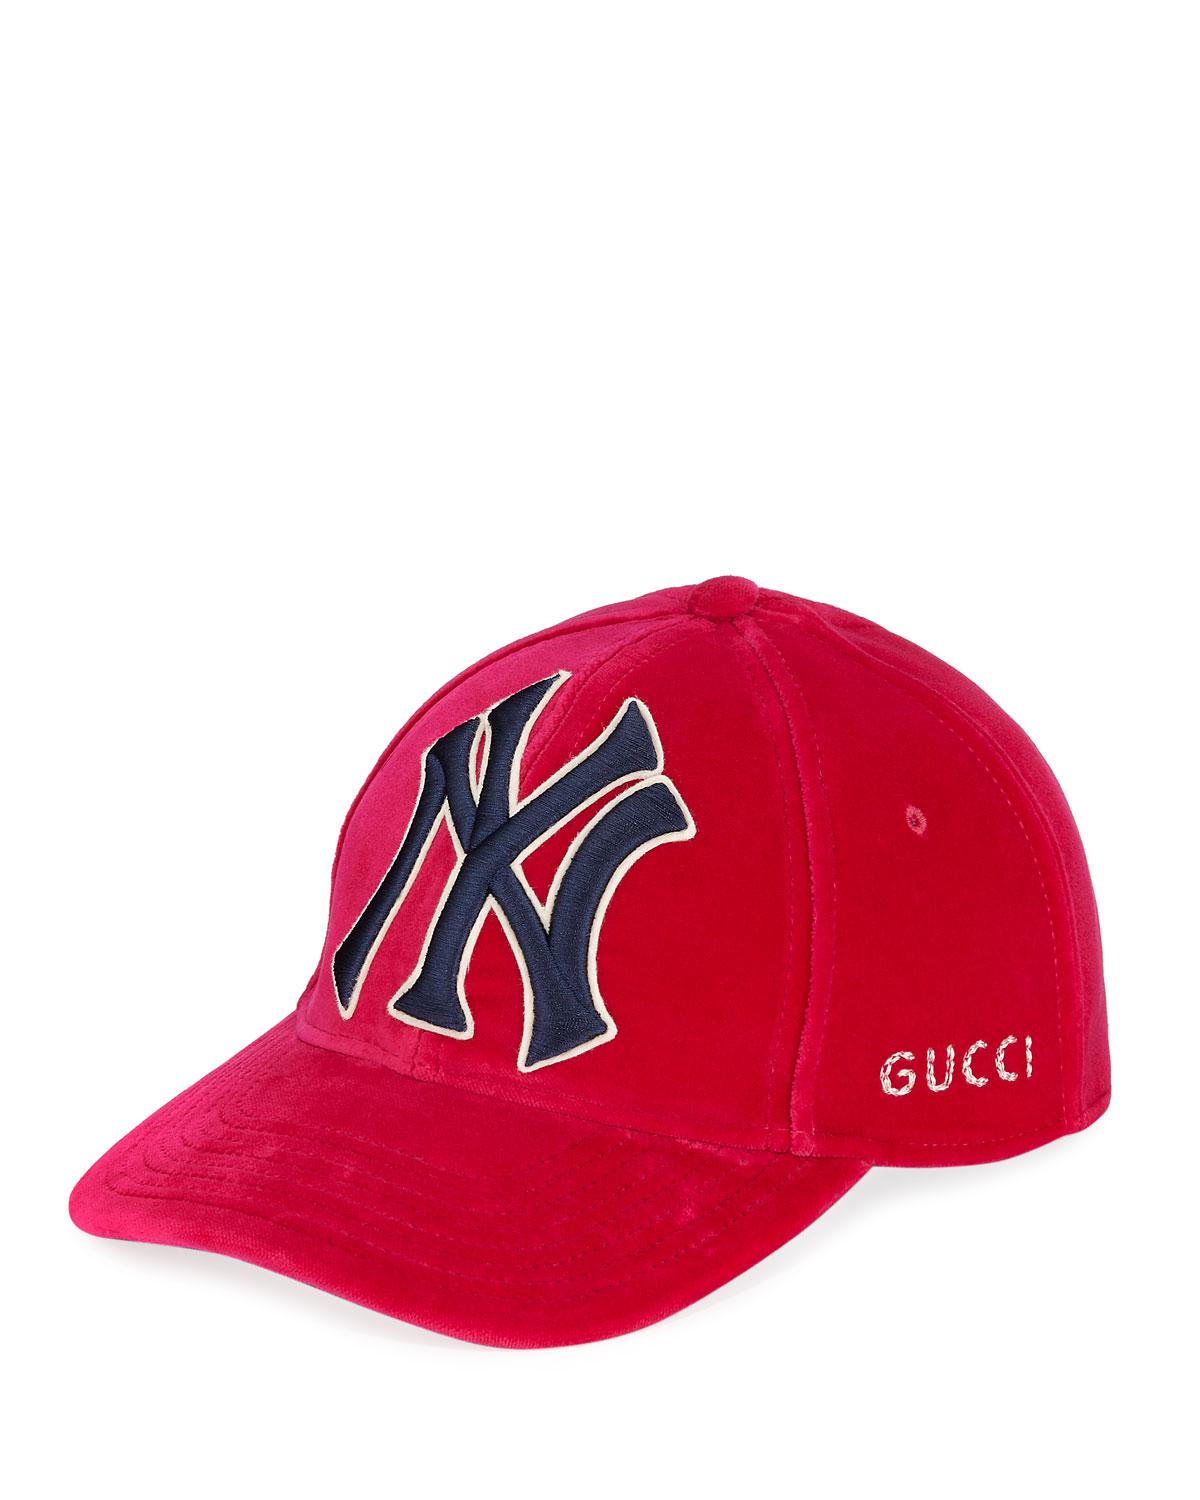 gucci new hat